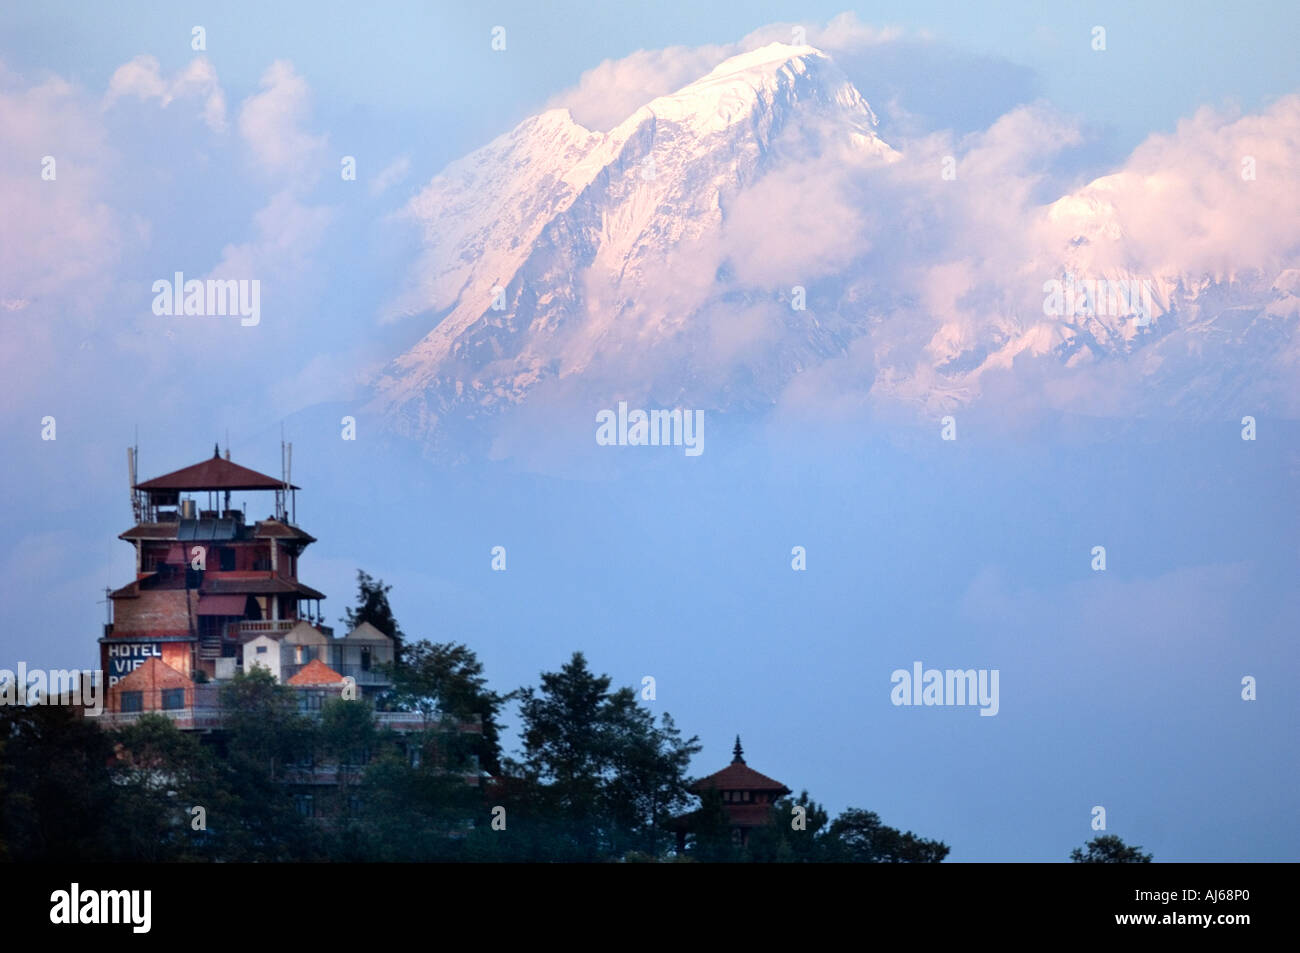 NAGARKOT HIMALAYAN Resort mountain chaîne de collines vallée de Katmandou vale dale glen Asie Népal Katmandou dell anapurna coucher du soleil Banque D'Images